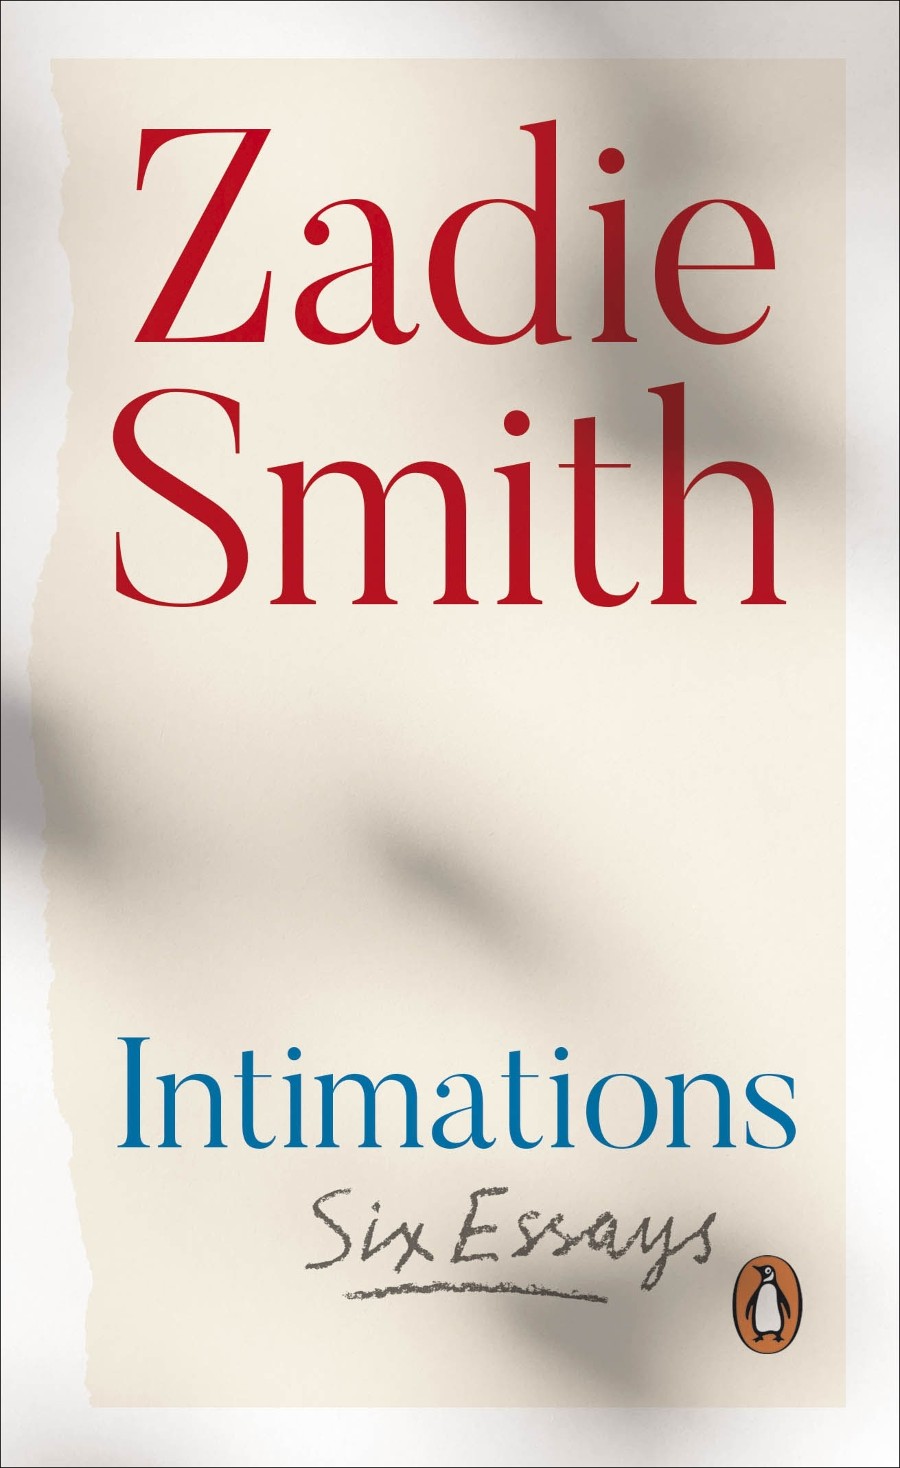 zadie smith, women of colour